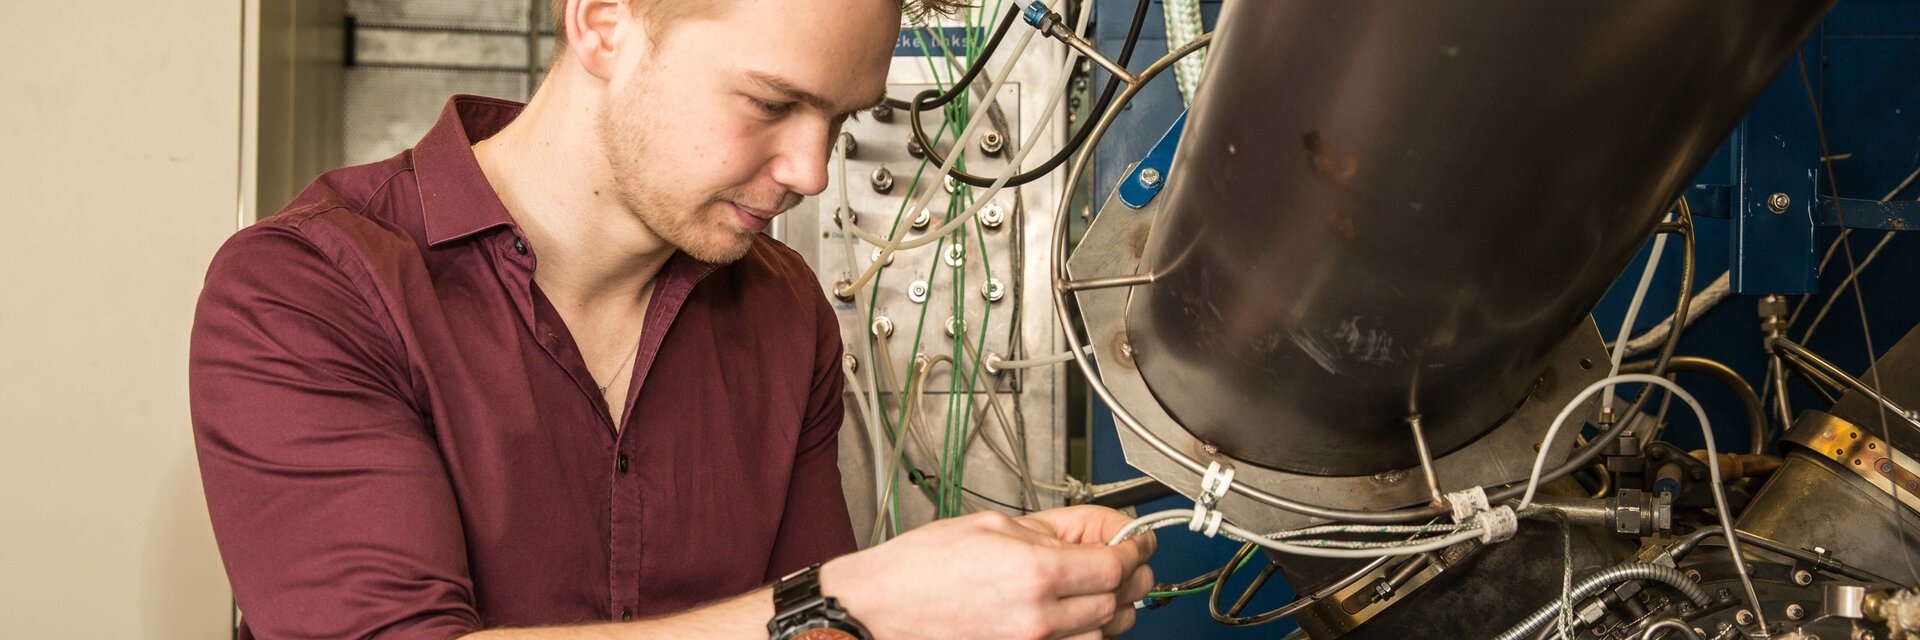 Ein junger Mann arbeitet an einer Maschine mit vielen Kabeln